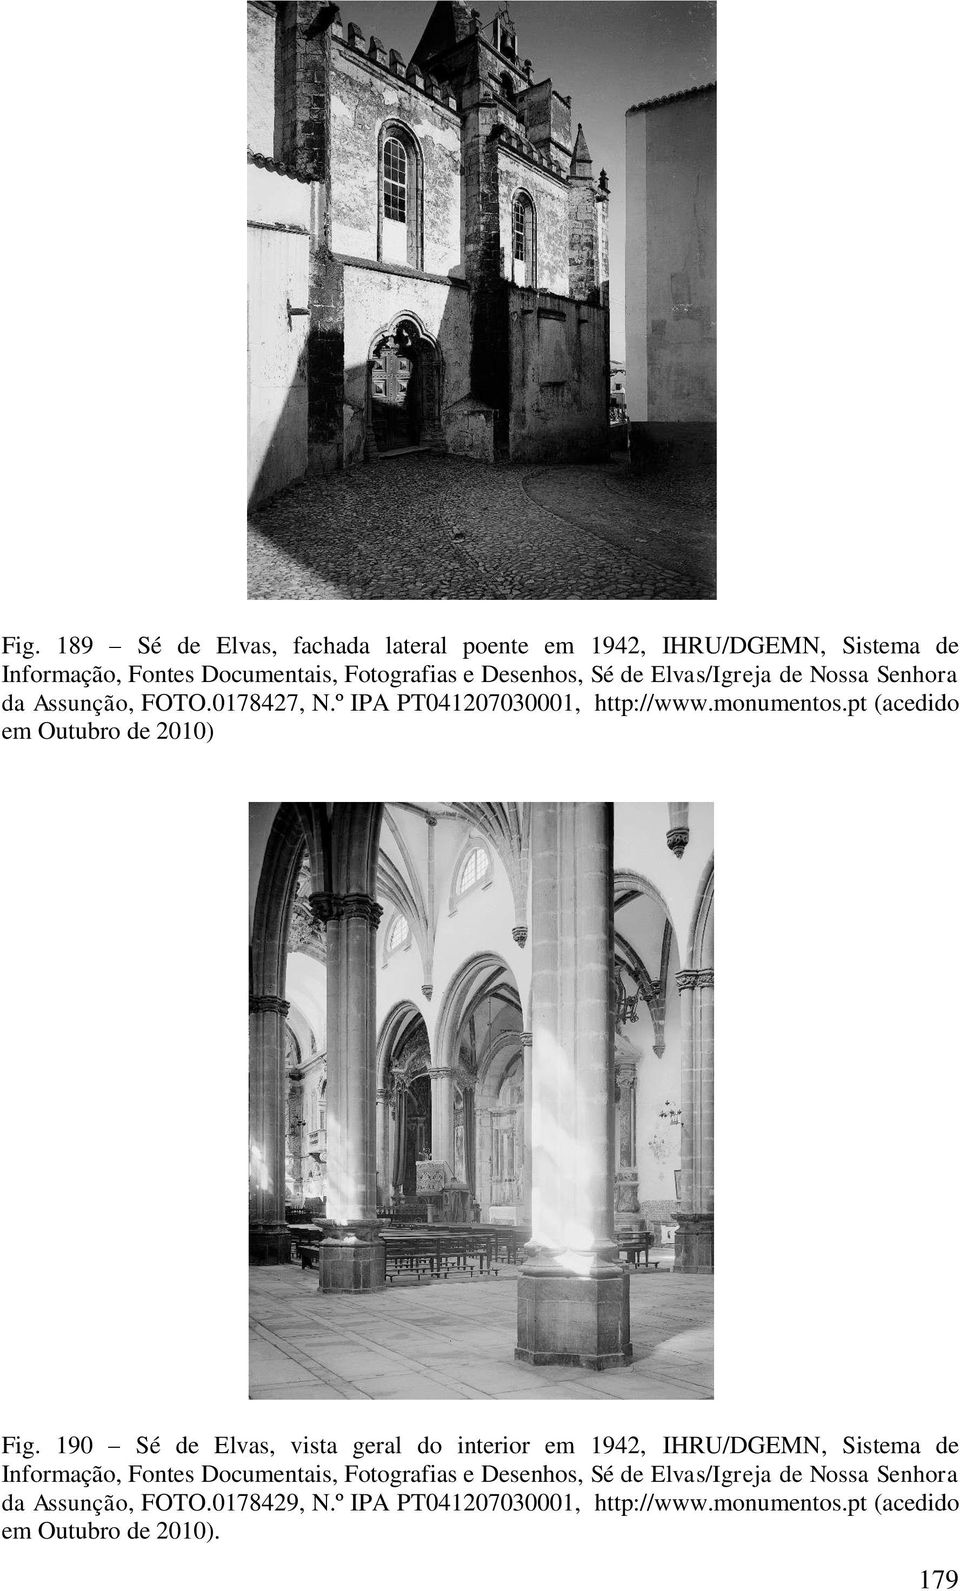 190 Sé de Elvas, vista geral do interior em 1942, IHRU/DGEMN, Sistema de Informação, Fontes Documentais, Fotografias e Desenhos, Sé de